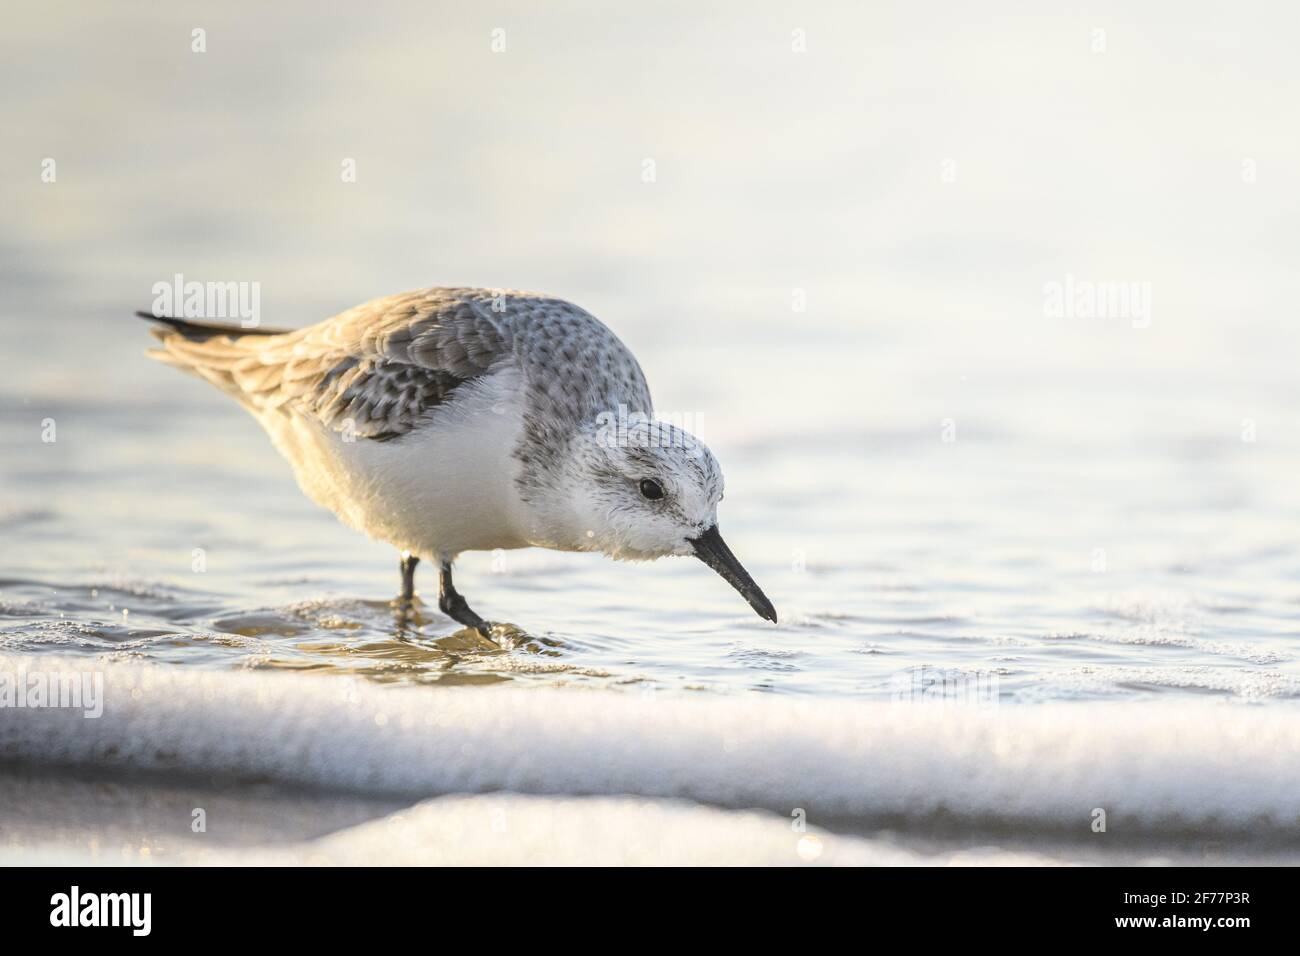 France, somme, Baie de somme, Quend-Plage, Sandpiper sanderling (Calidris alba) sur la plage à la recherche de nourriture dans la brise de mer Banque D'Images